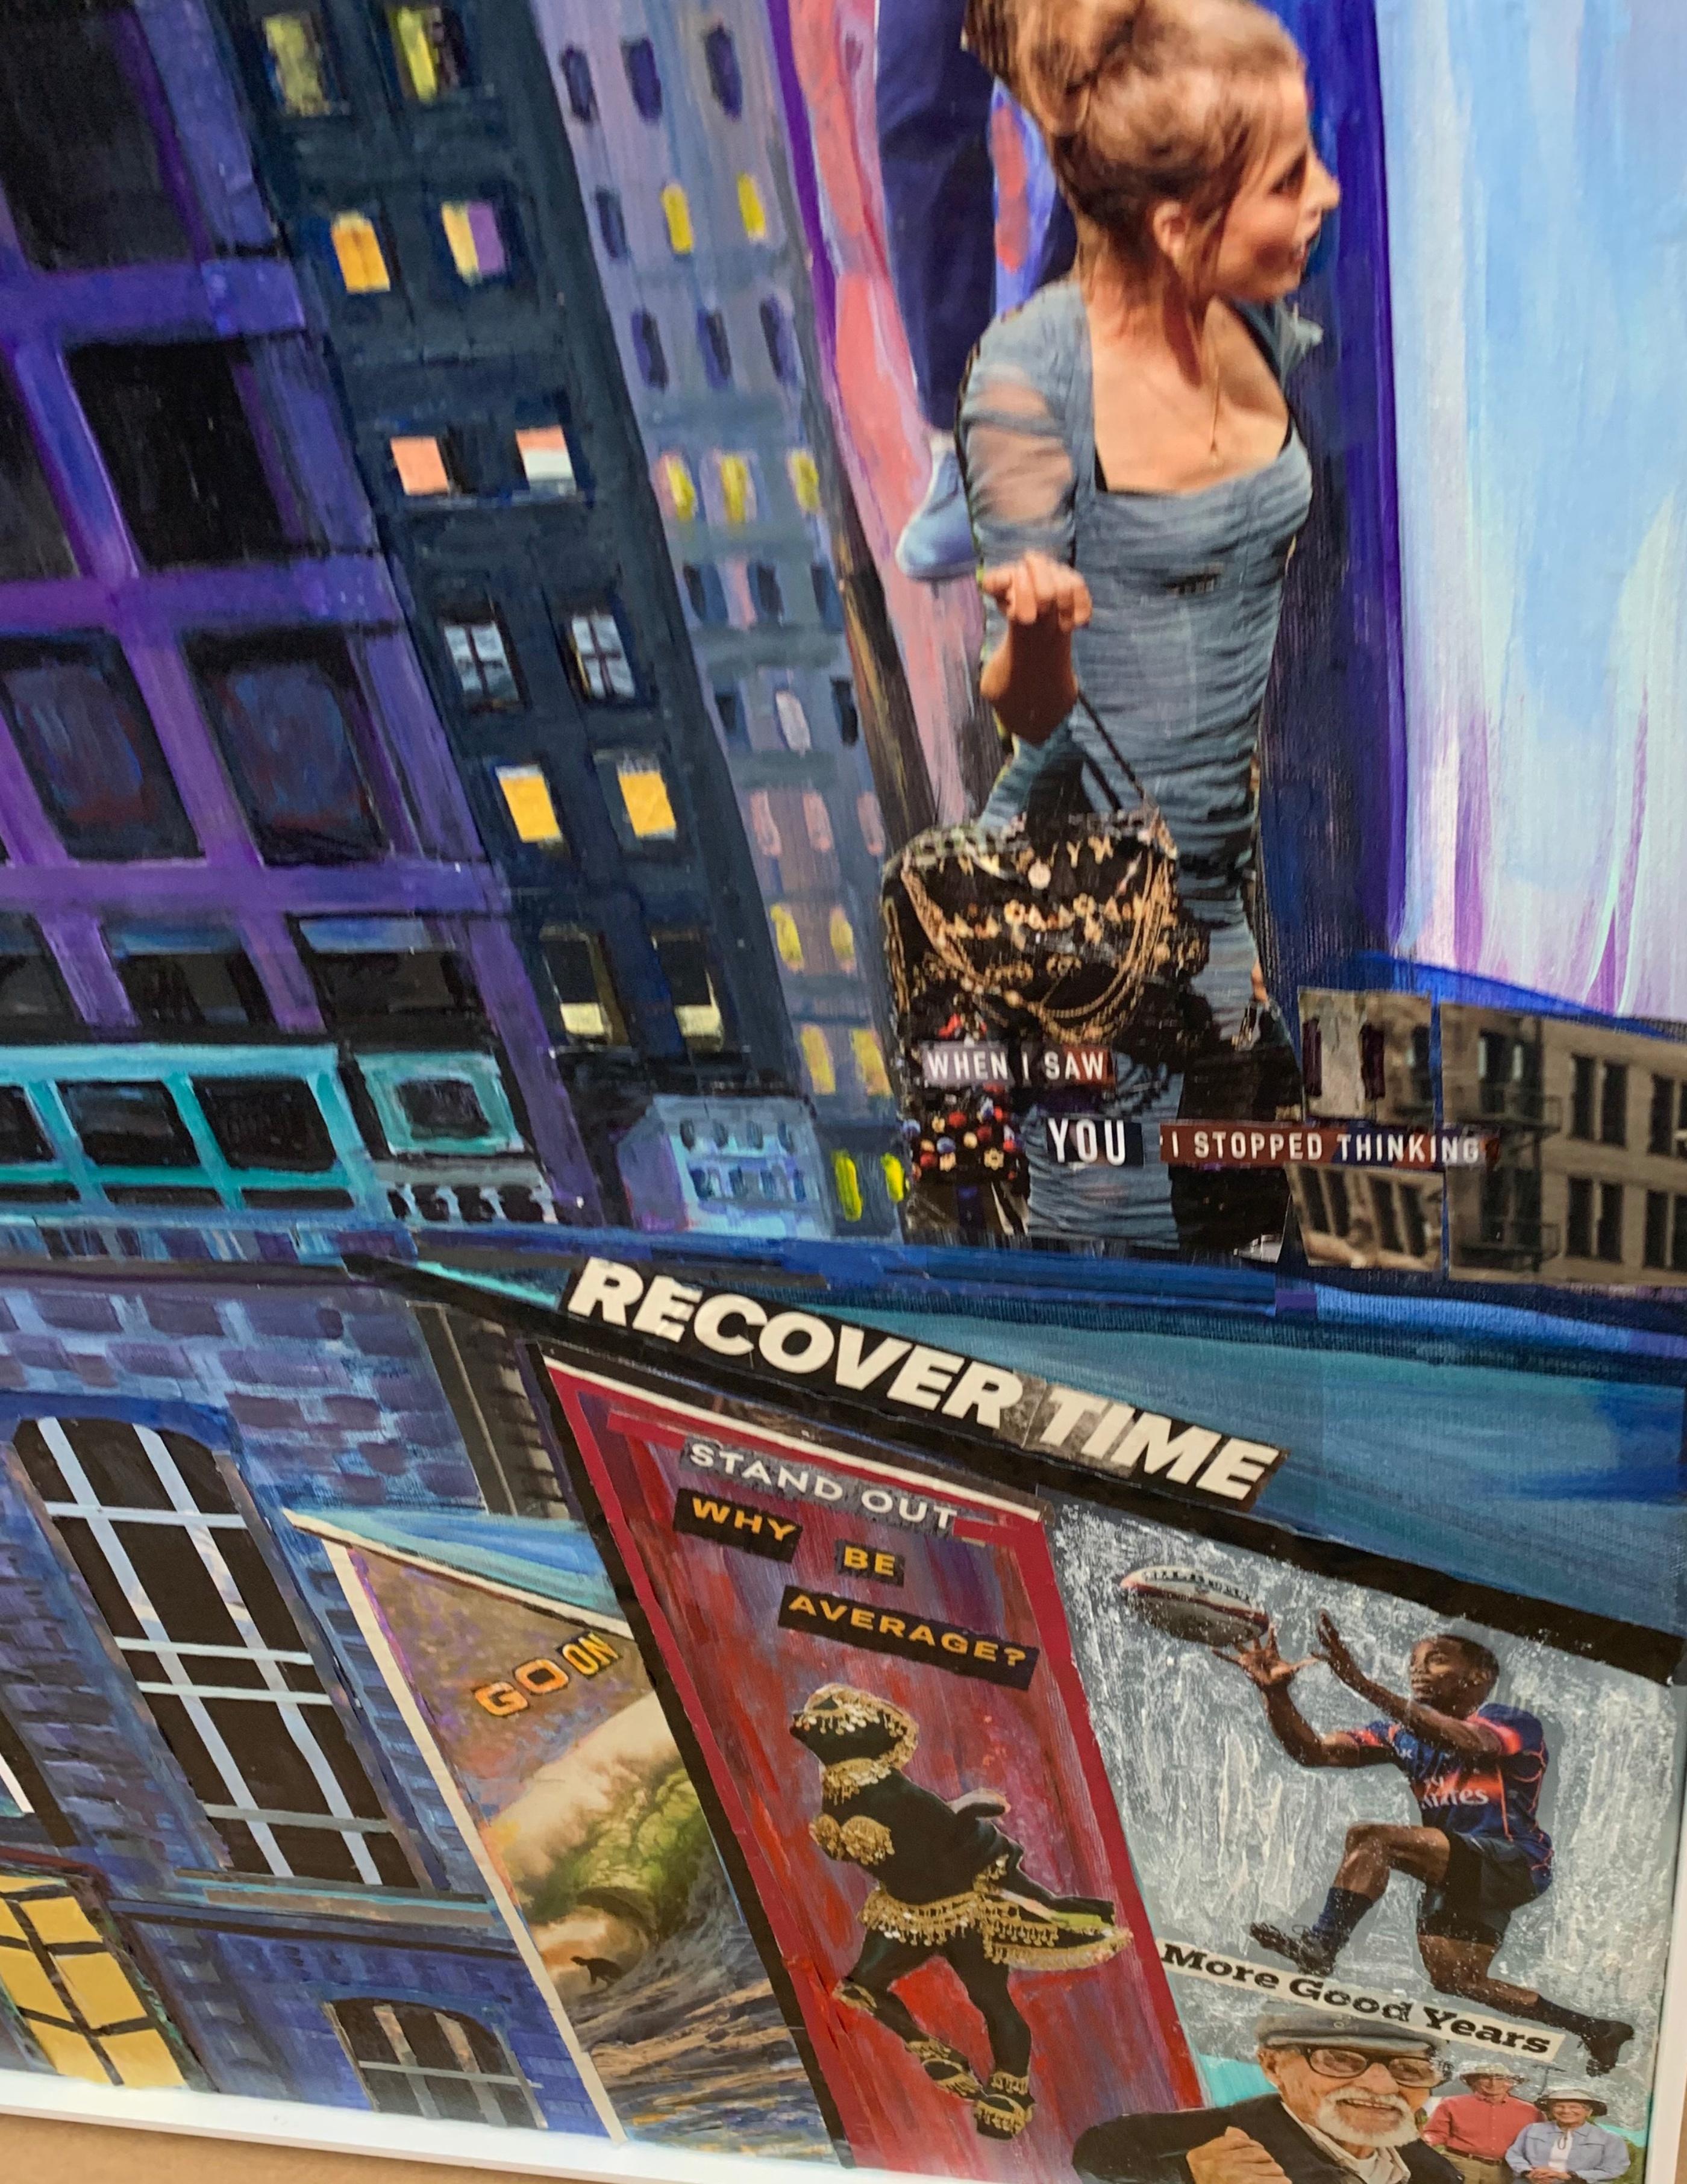 Thelma Appel
Times Square XI (Erholungszeit), 2018
Acryl und Collage auf Leinwand
Handsigniert, betitelt und datiert vom Künstler auf der Rückseite
Ausgestellt in der kuratierten Ausstellung 